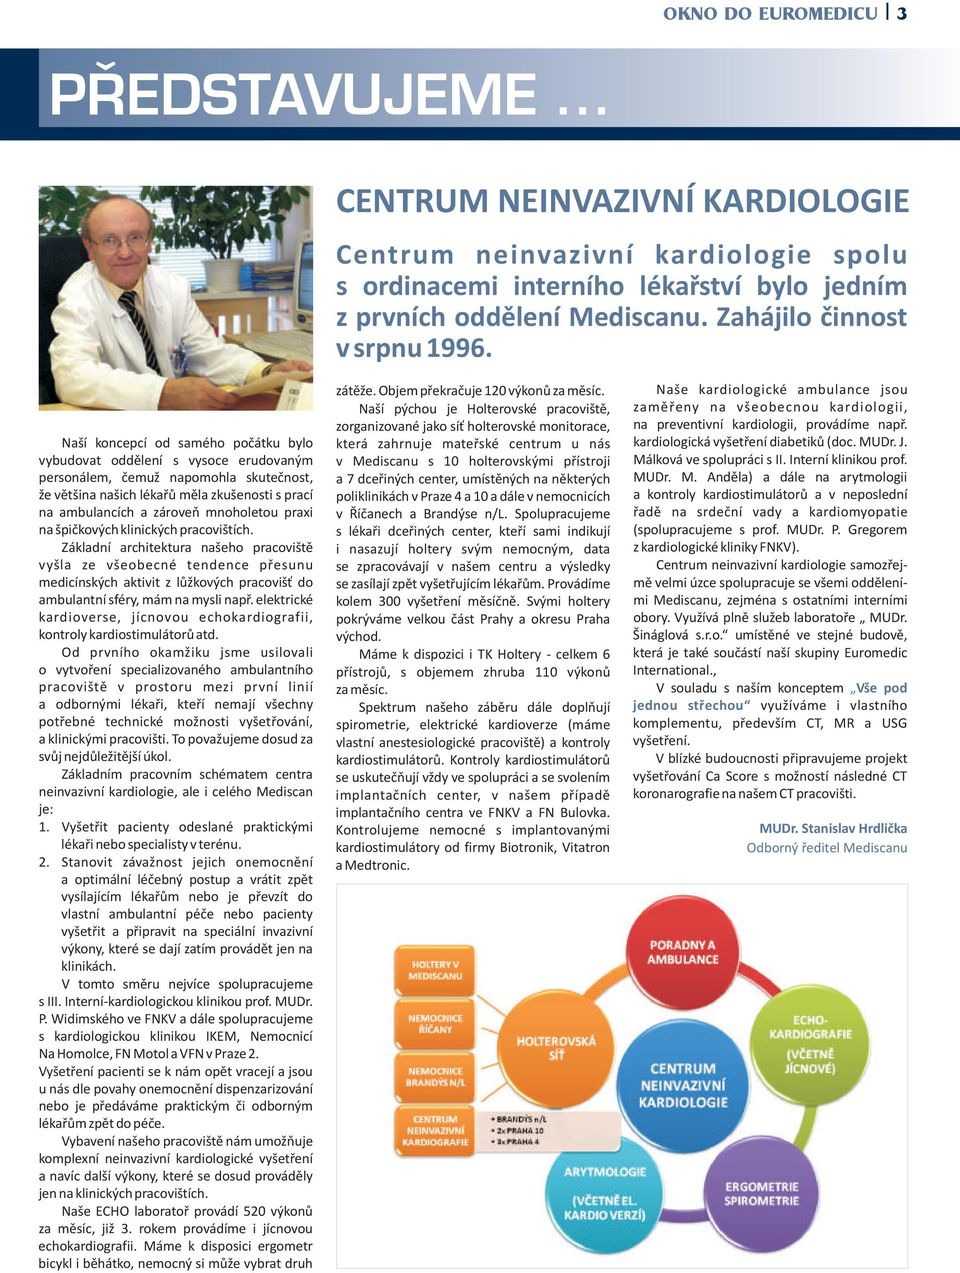 Málková ve spolupráci s II. Interní klinikou prof. MUDr. M. Anděla) a dále na arytmologii a kontroly kardiostimulátorů a v neposlední řadě na srdeční vady a kardiomyopatie (spolupracujeme s prof.